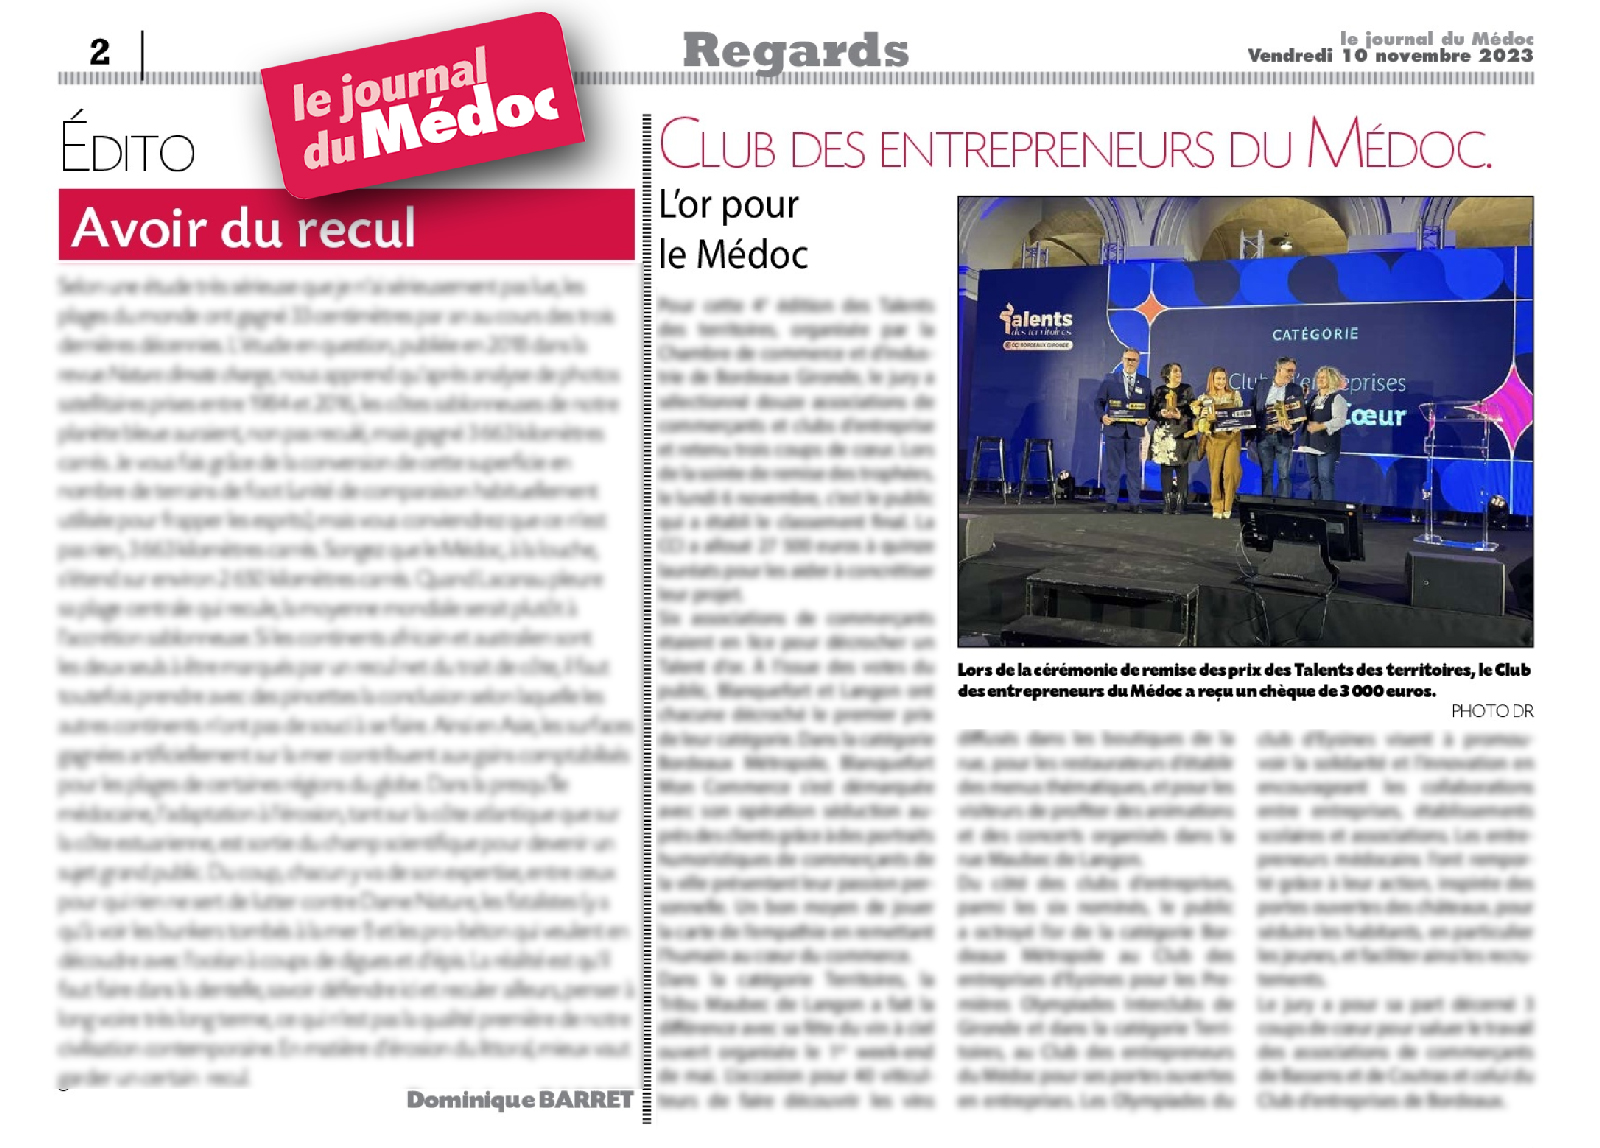 journal.lejournaldumedoc.fr 2023 11 10 Talents des Territoires 2 article - Le JDM titre son article sur les Talents des territoire : "L'or pour le Médoc"